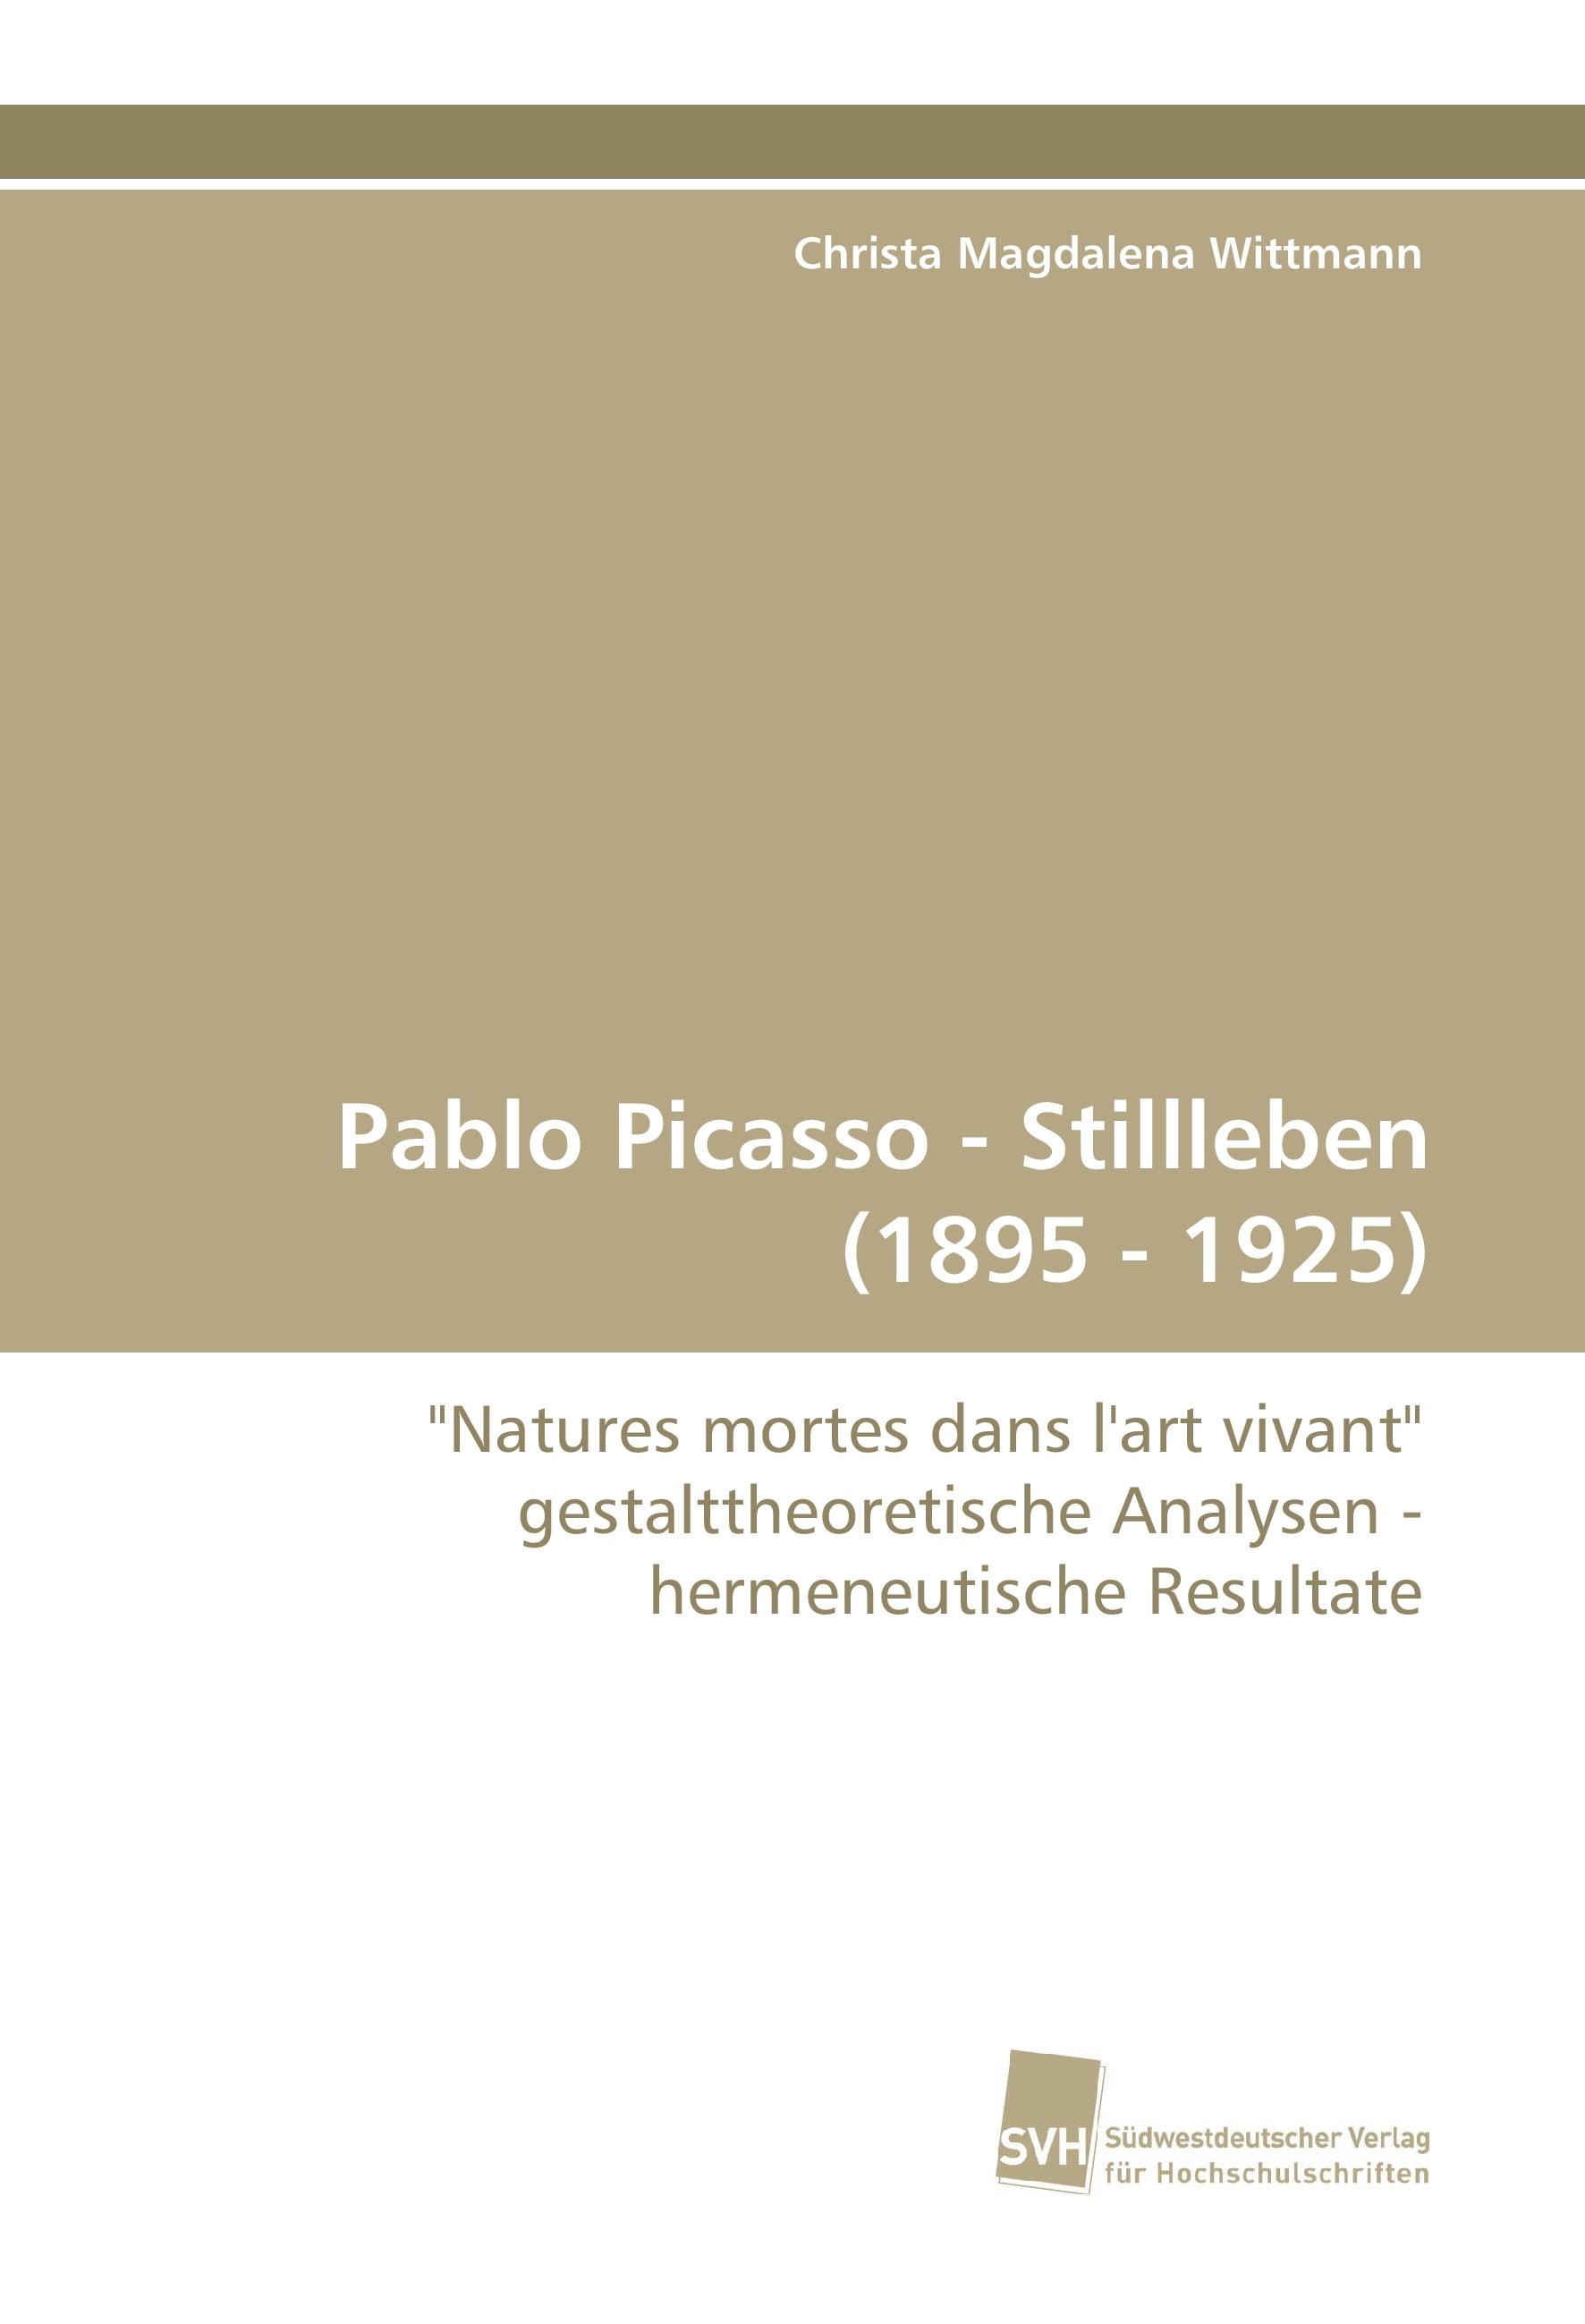 Pablo Picasso - Stillleben (1895 - 1925) / 